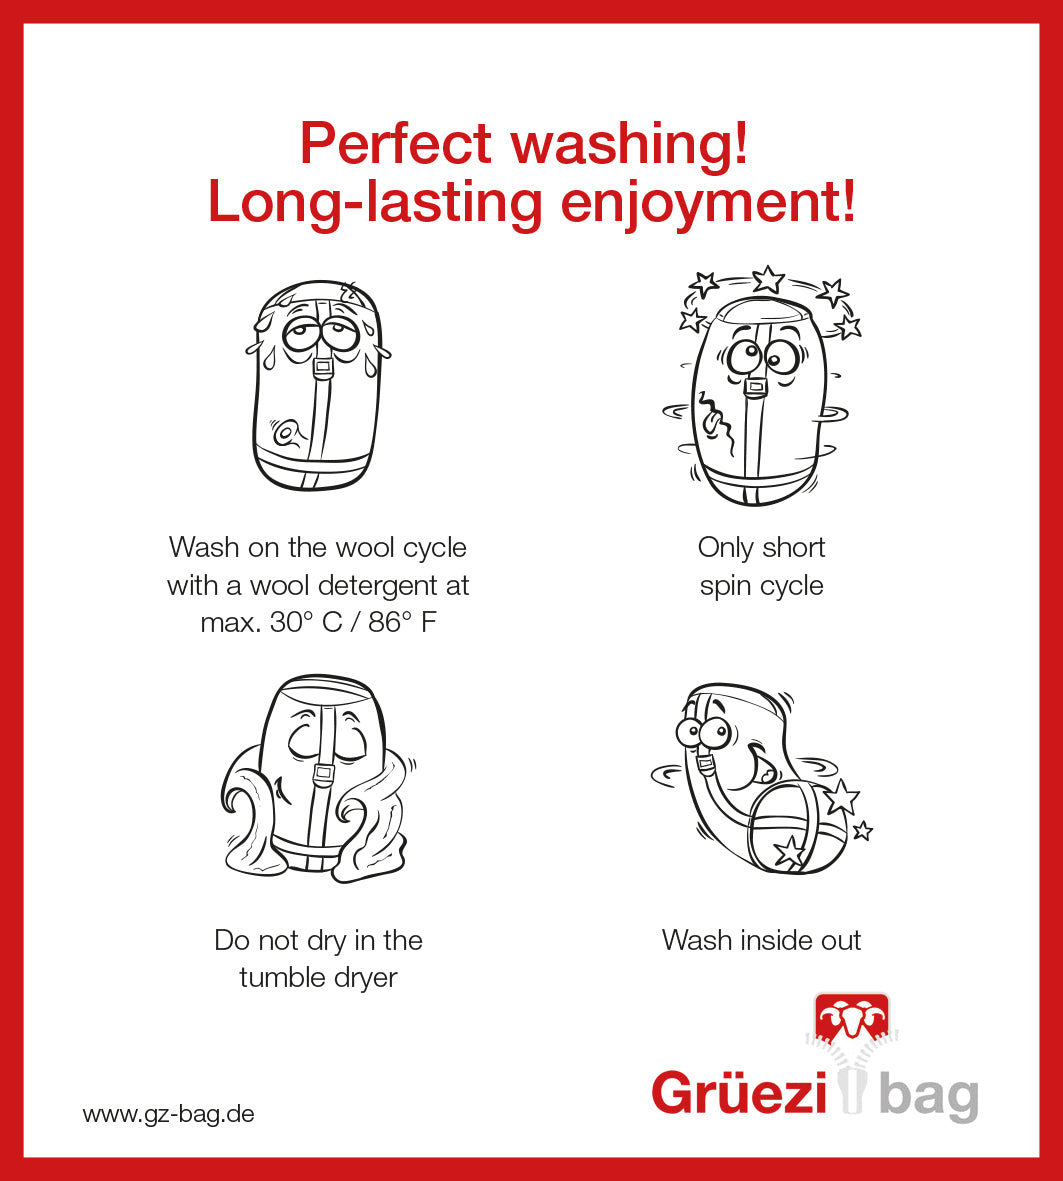 Grüezi bag Wollschlafsack Biopod Wolle Zero XL - Washing instructions english